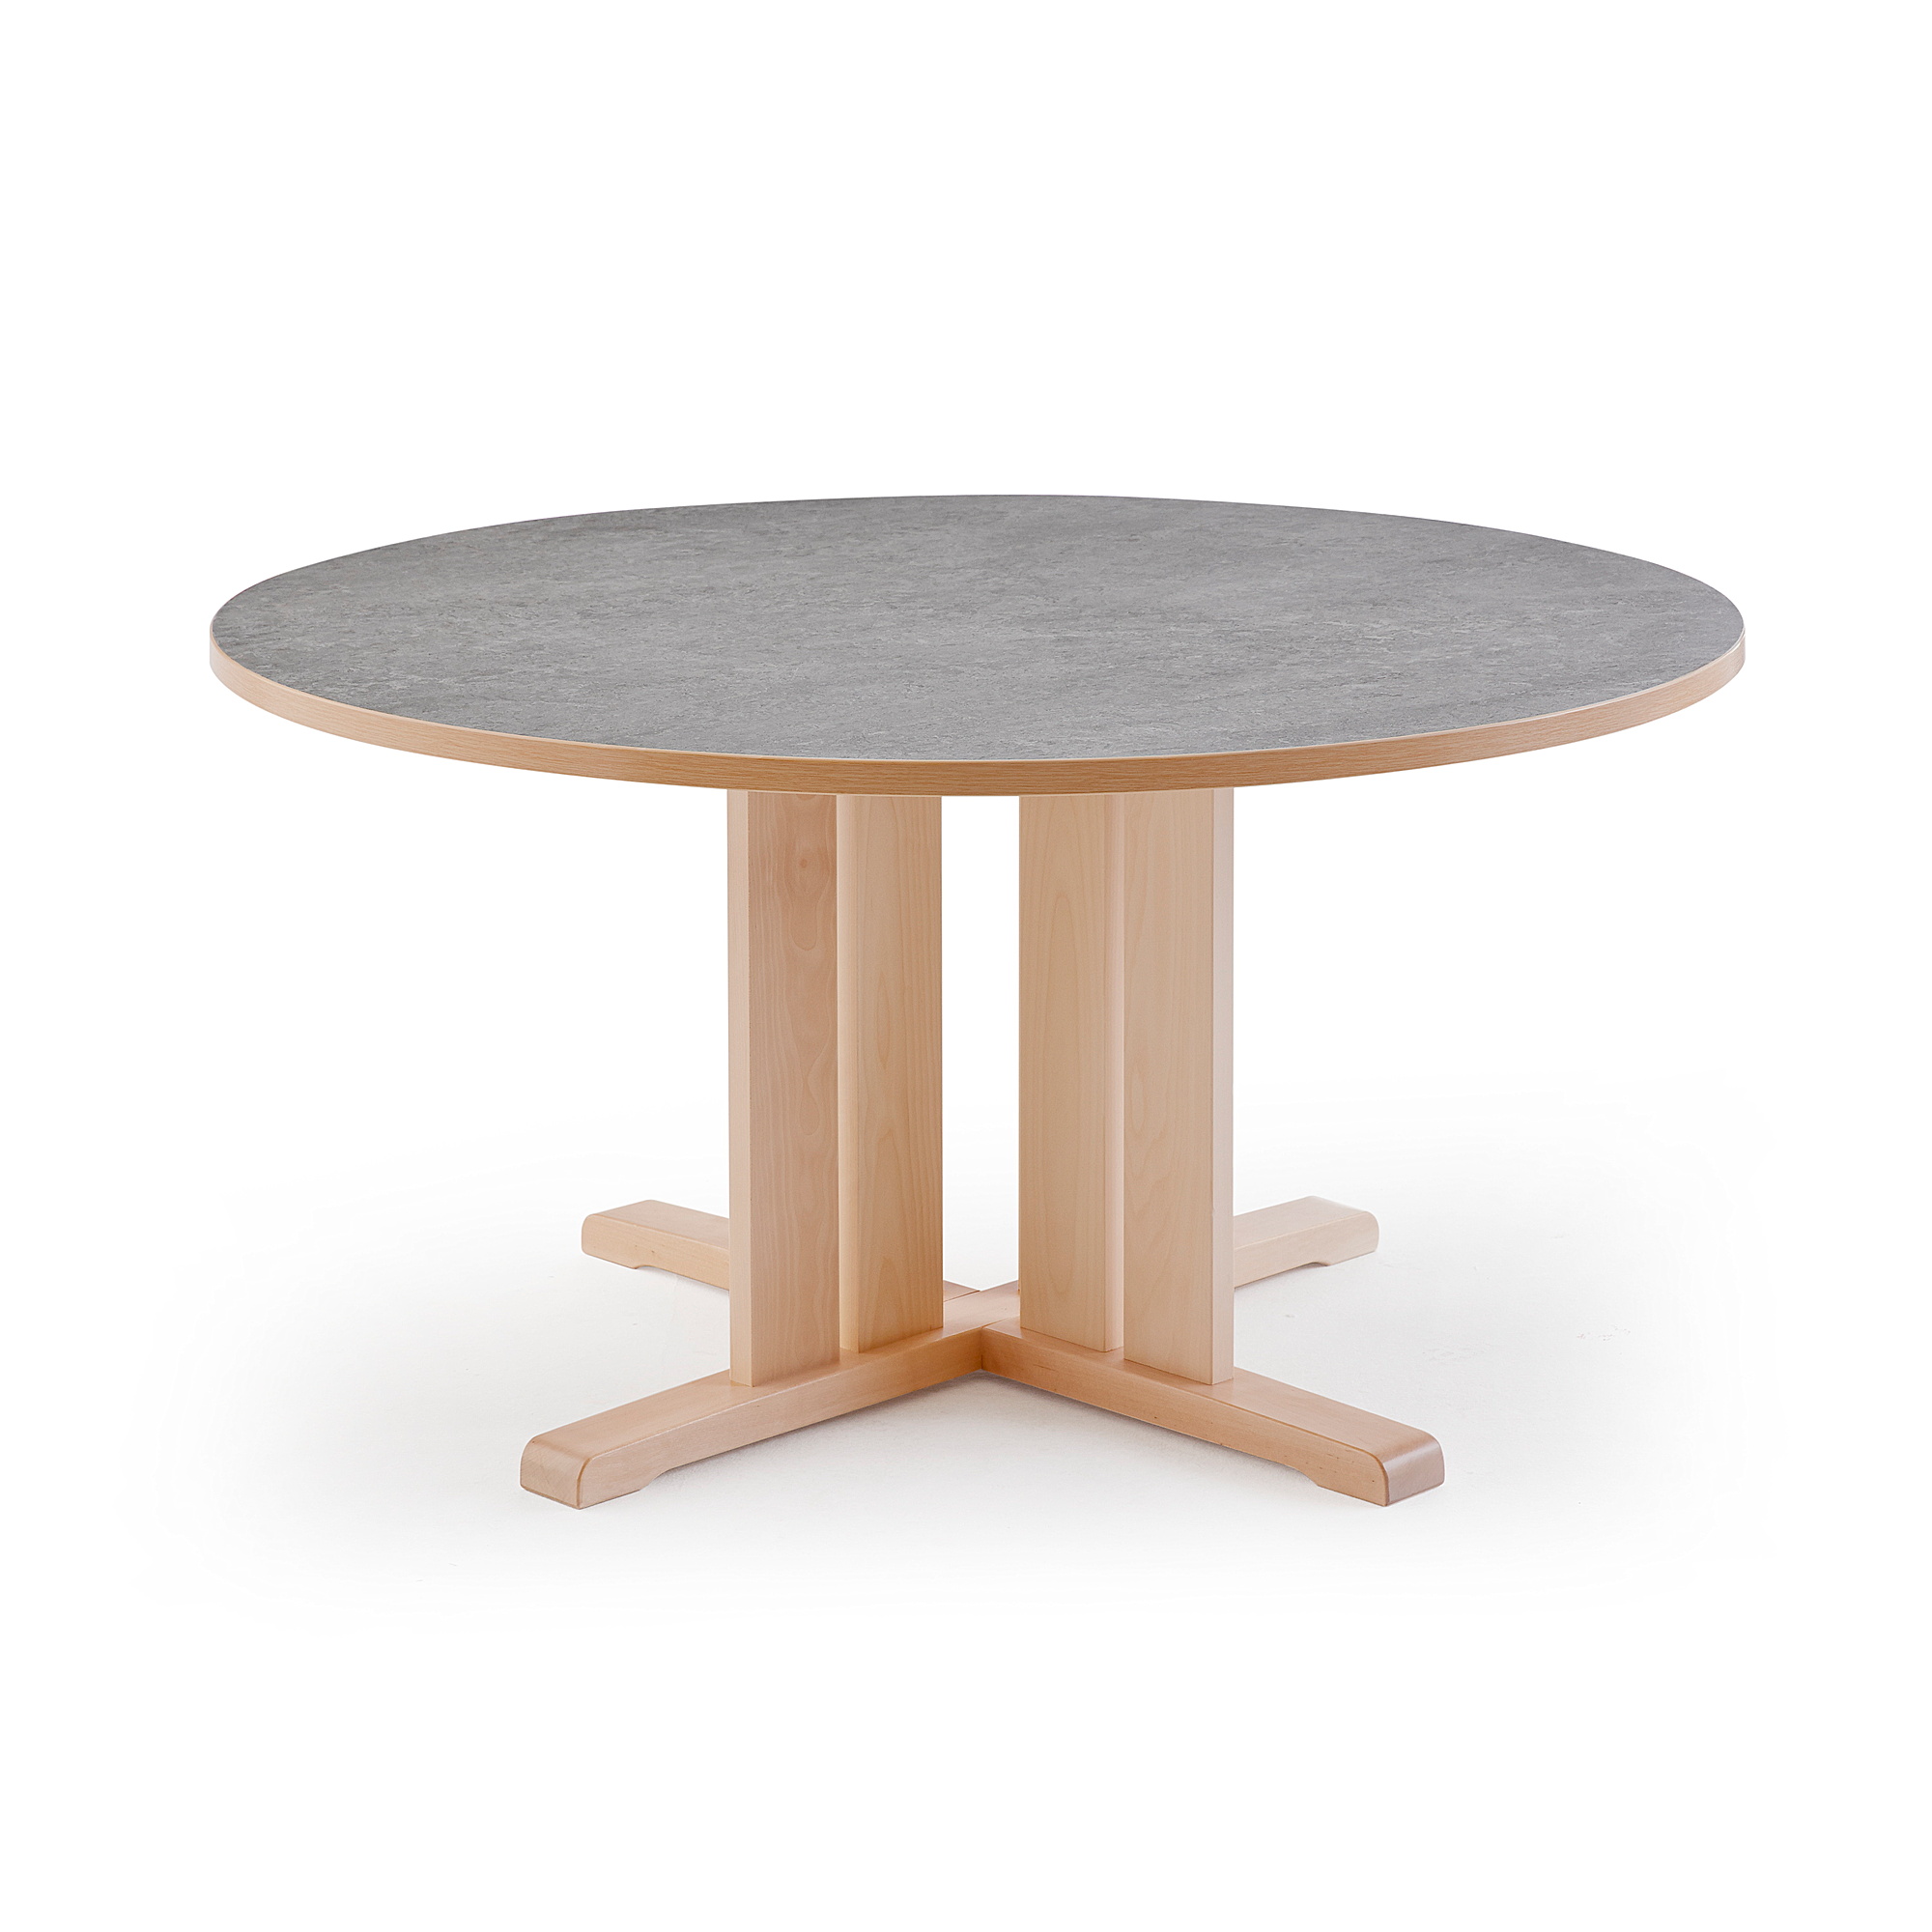 Stůl KUPOL, Ø1200x720 mm, akustické linoleum, bříza/šedá